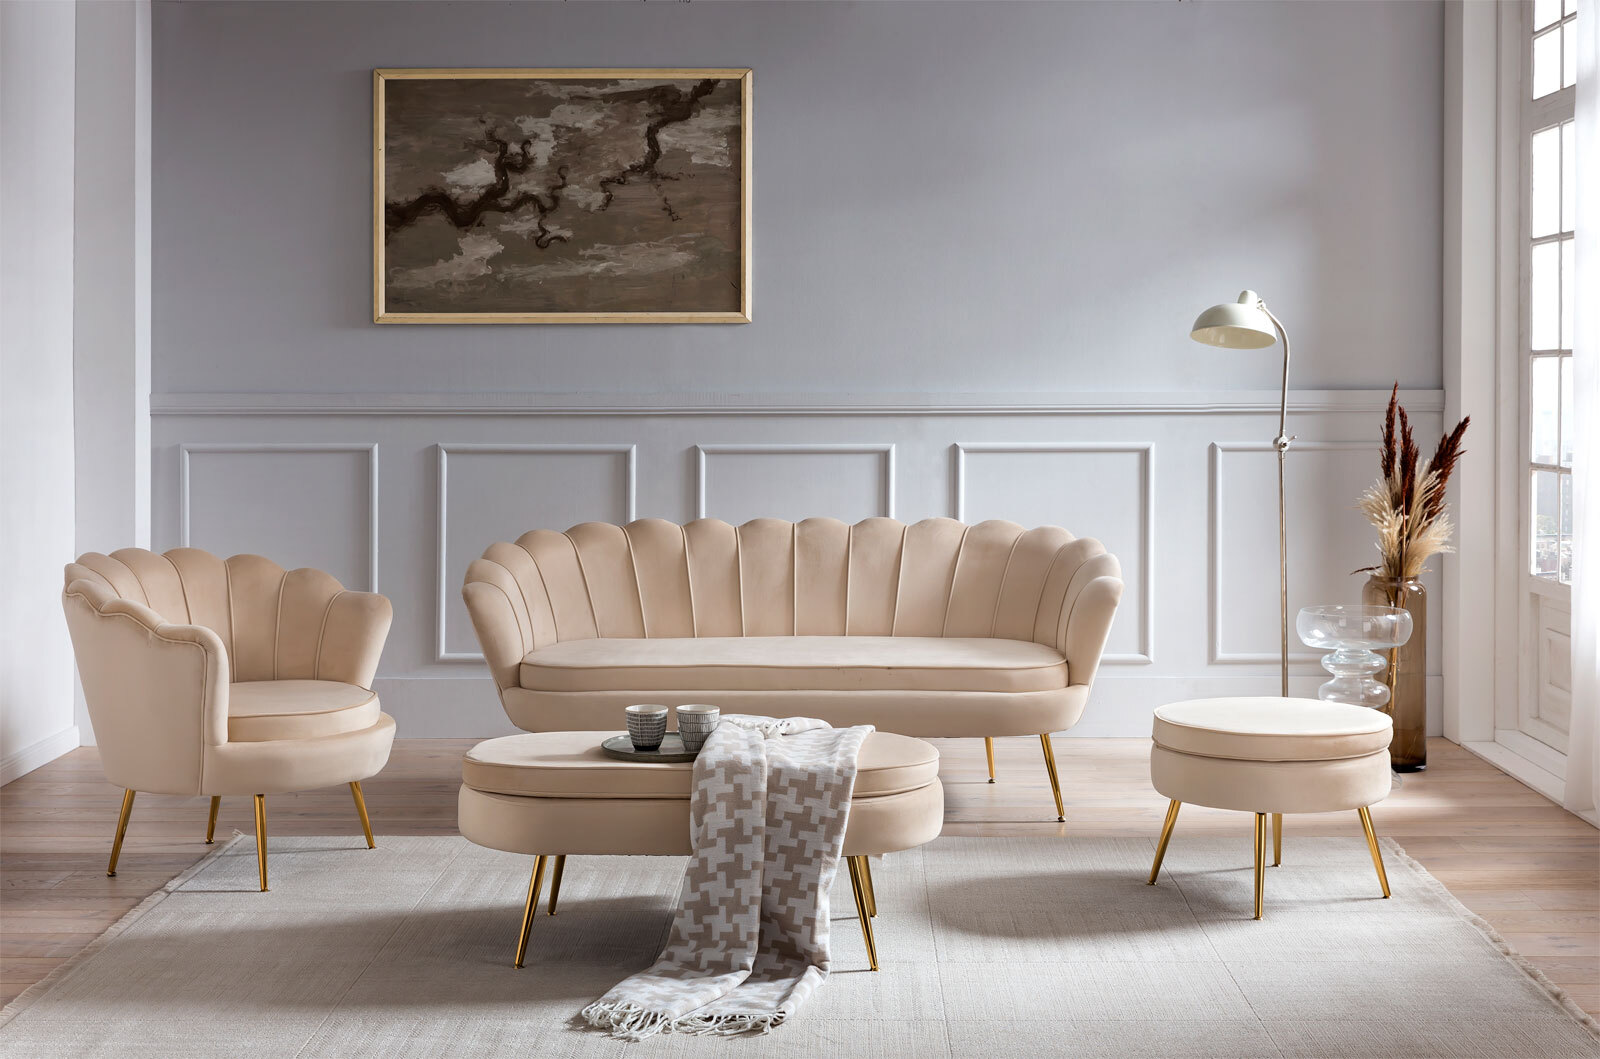 CASAVANTI Sofa 2-Sitzer beige